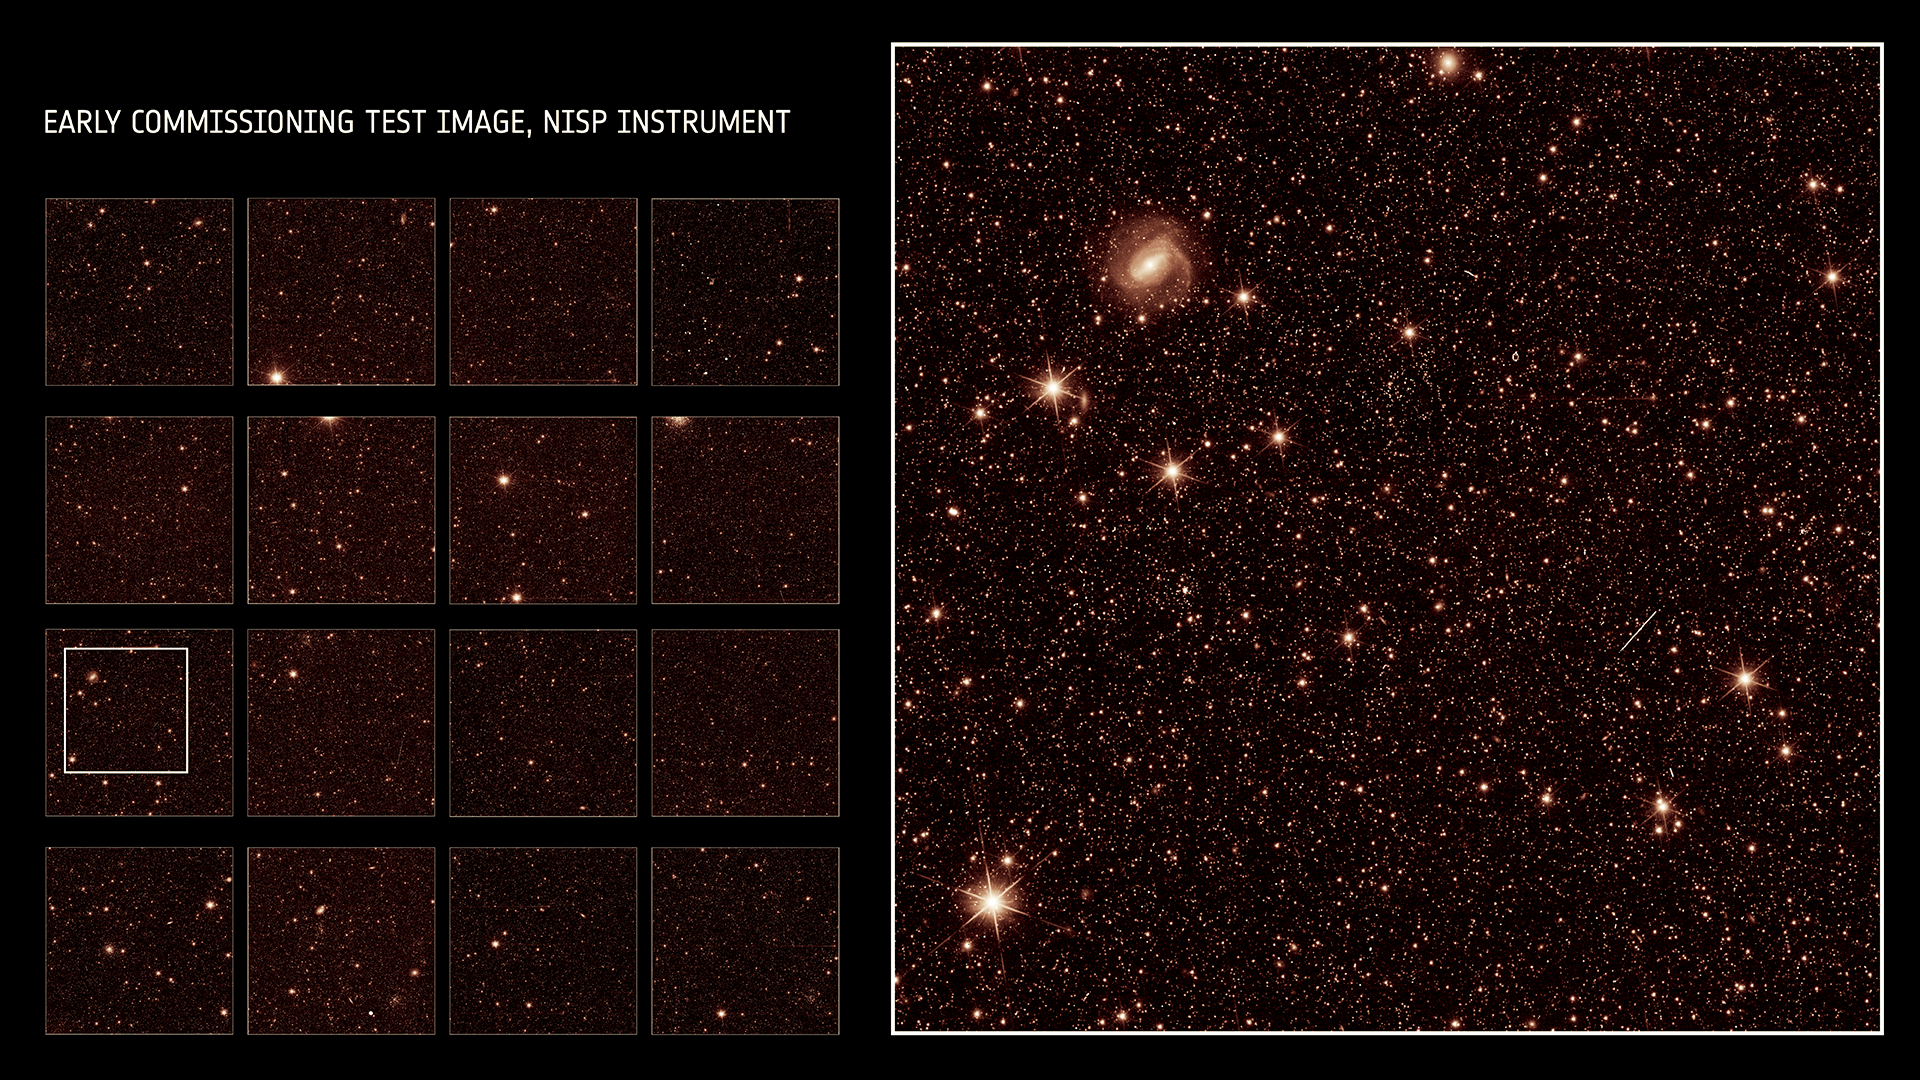 A imagem à esquerda mostra o campo de visão completo do NISP, com o zoom à direita (4% do campo de visão total do NISP).